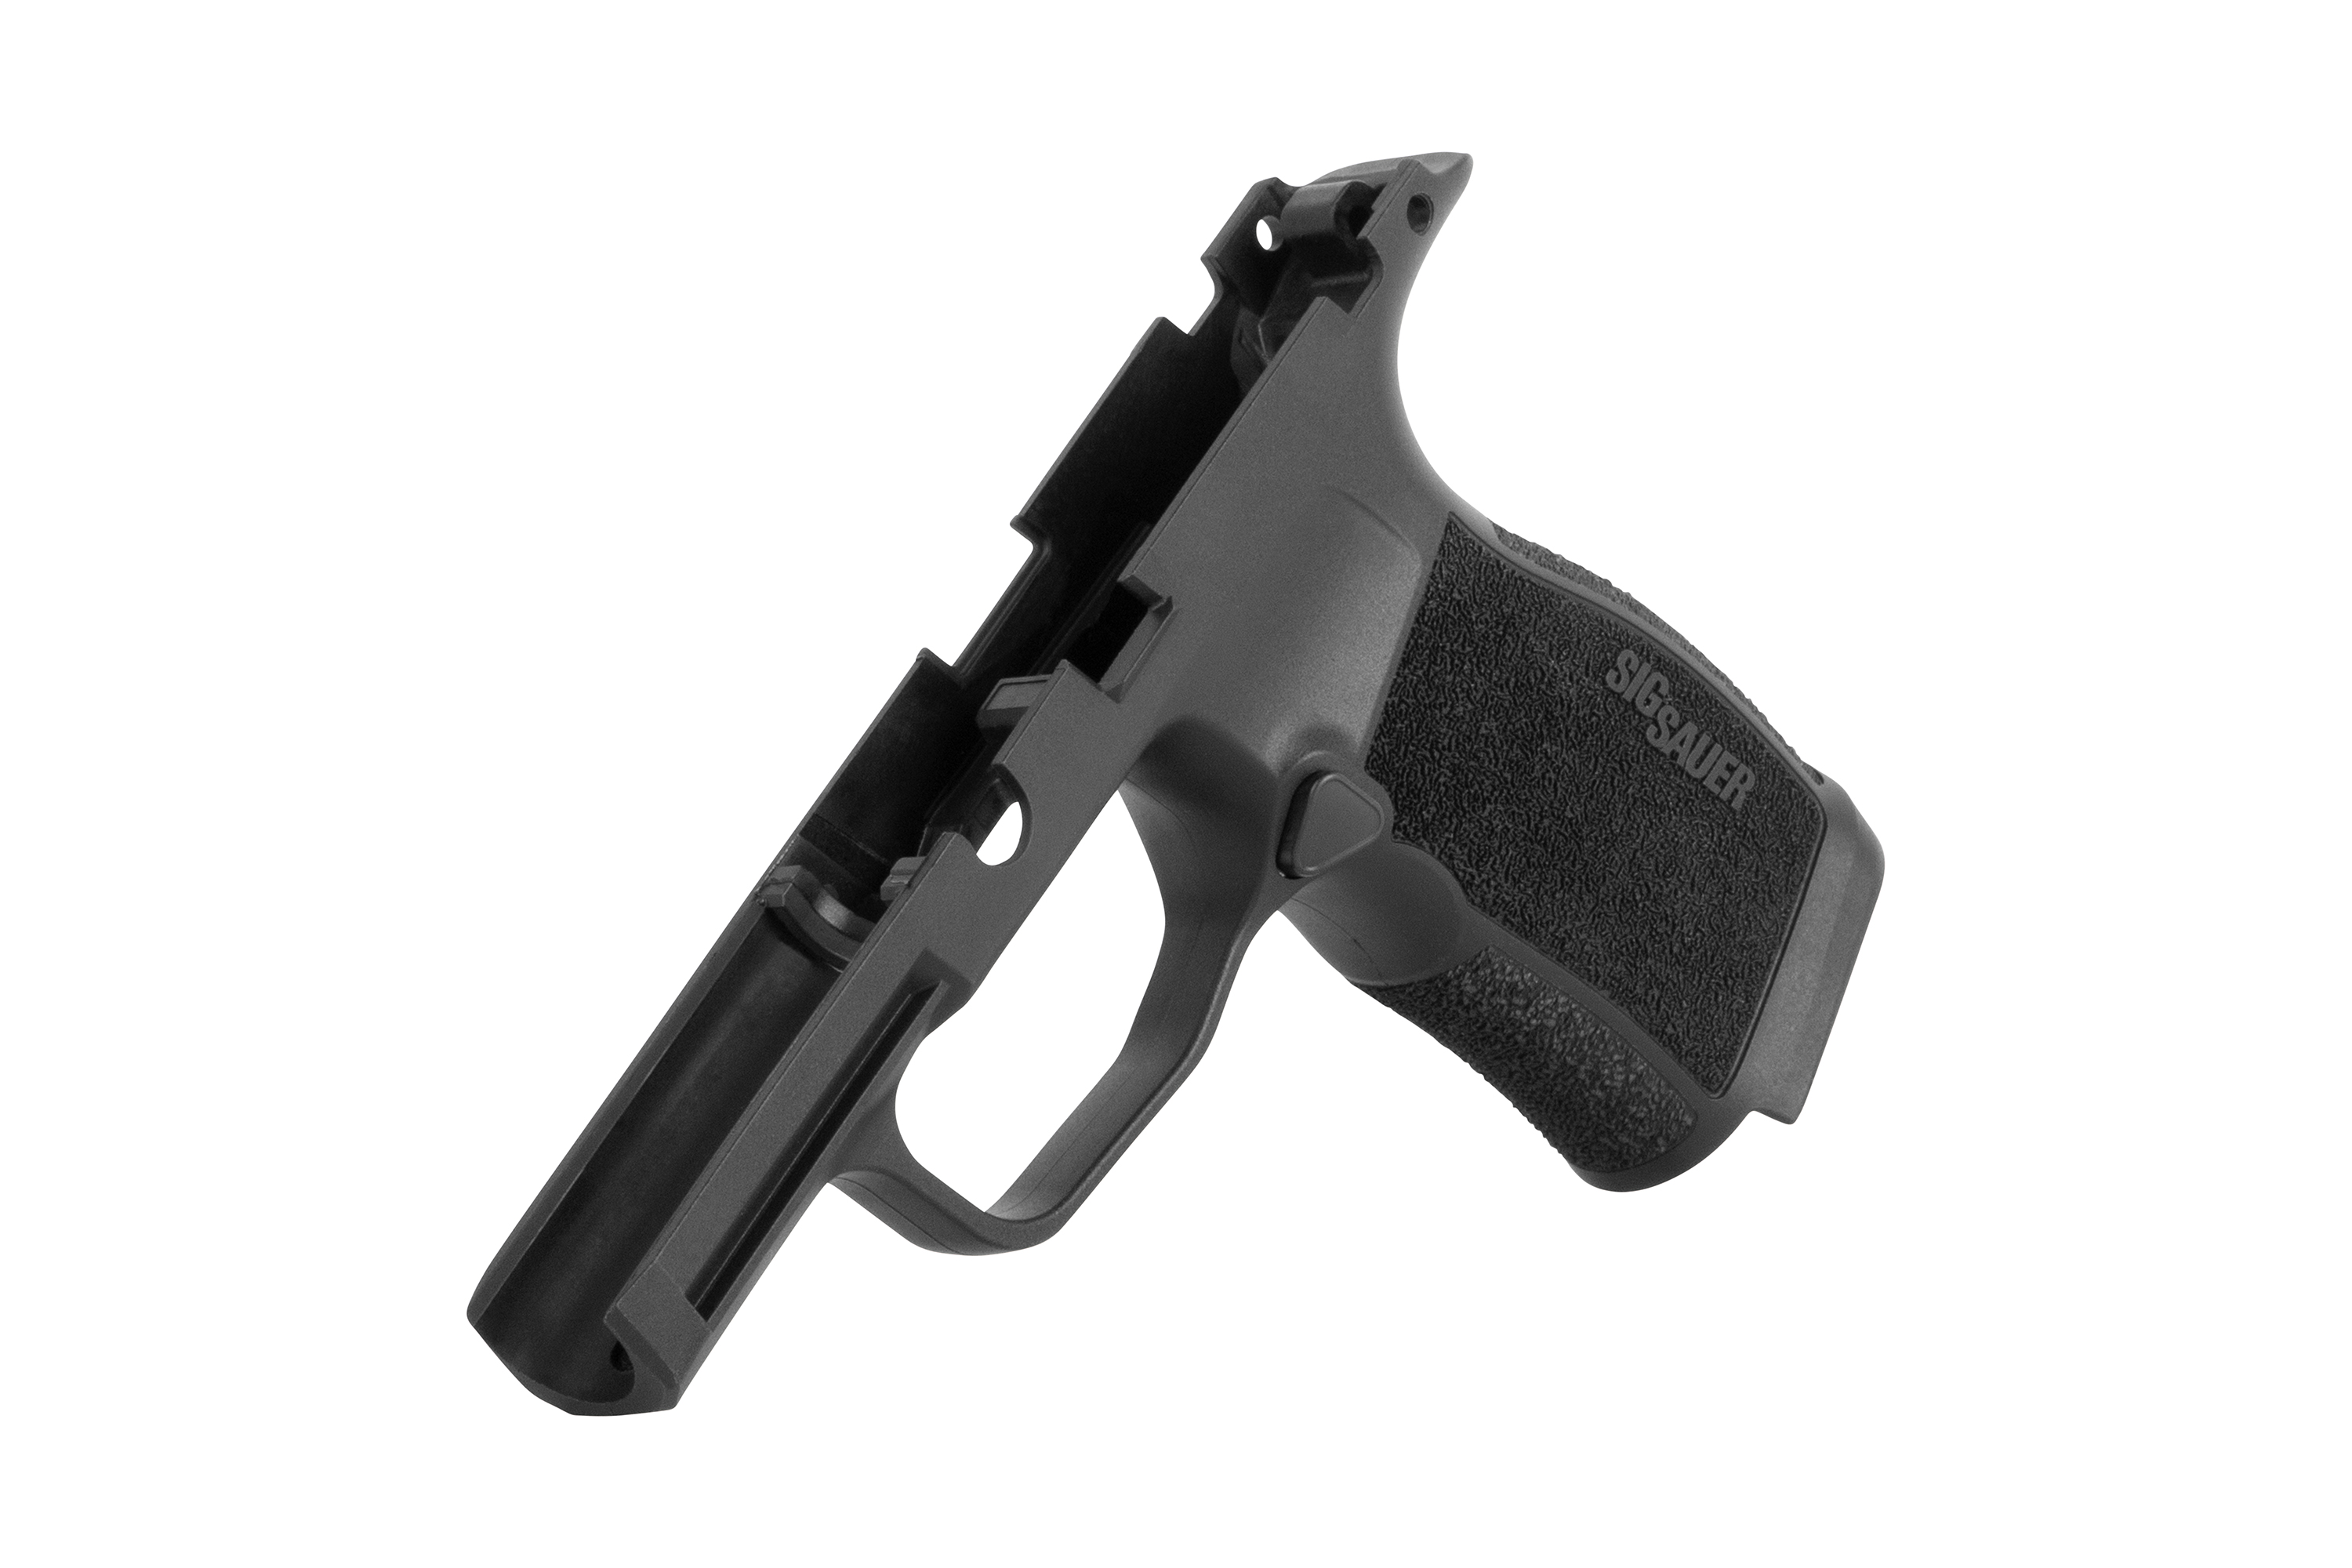 Sig Sauer Griffmodul P365 MS schwarz 9mm Luger